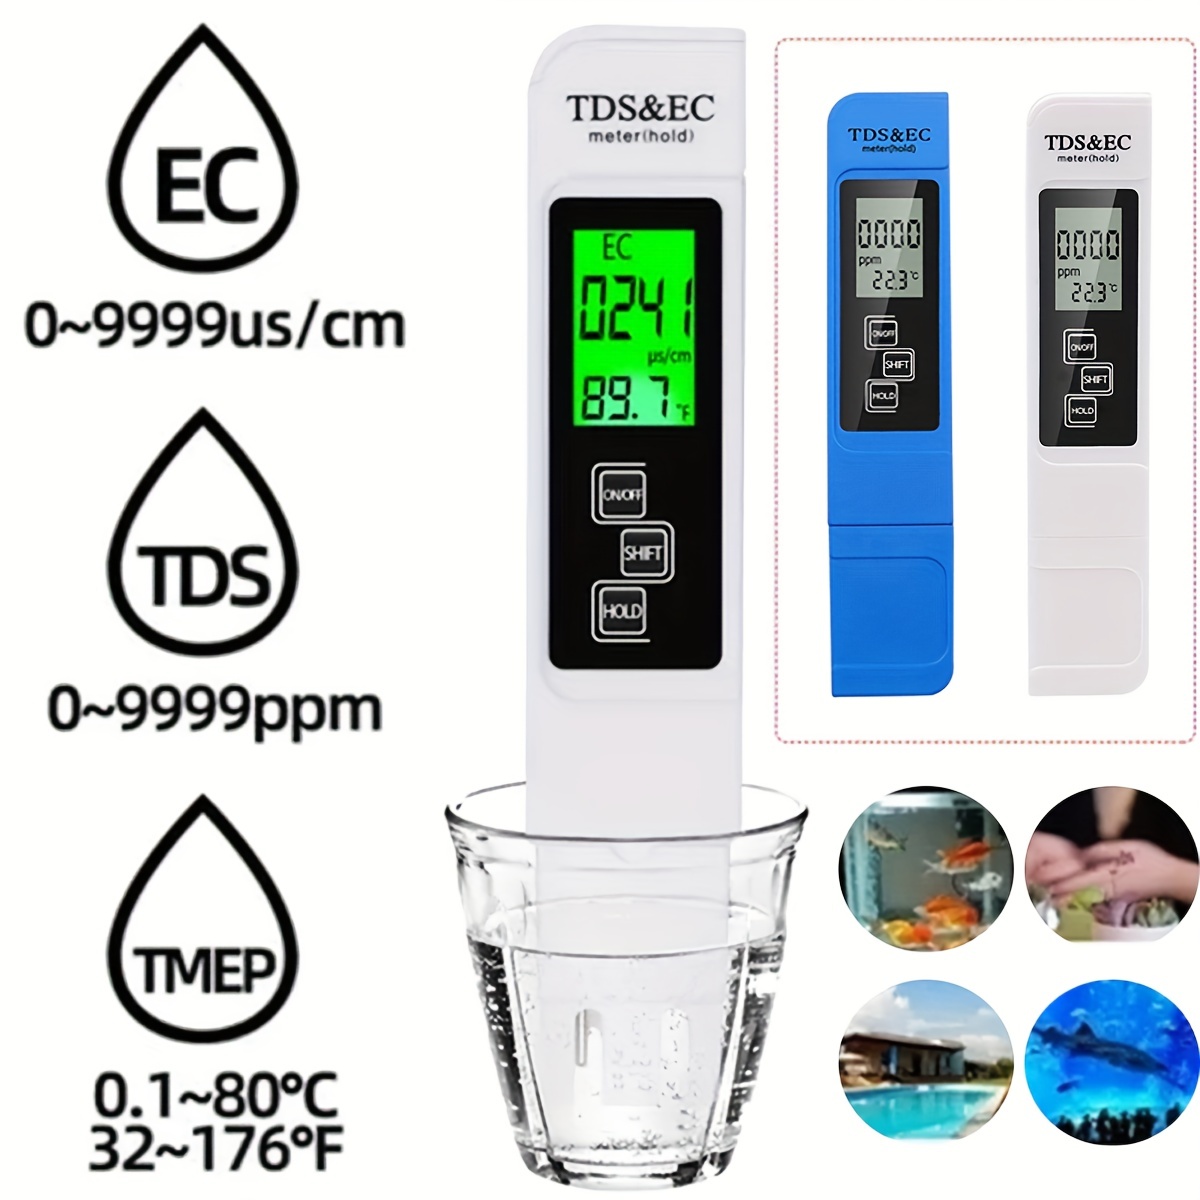 TDS Mètre Numérique Testeur D'eau 0-9990ppm - Réponses Bio.shop